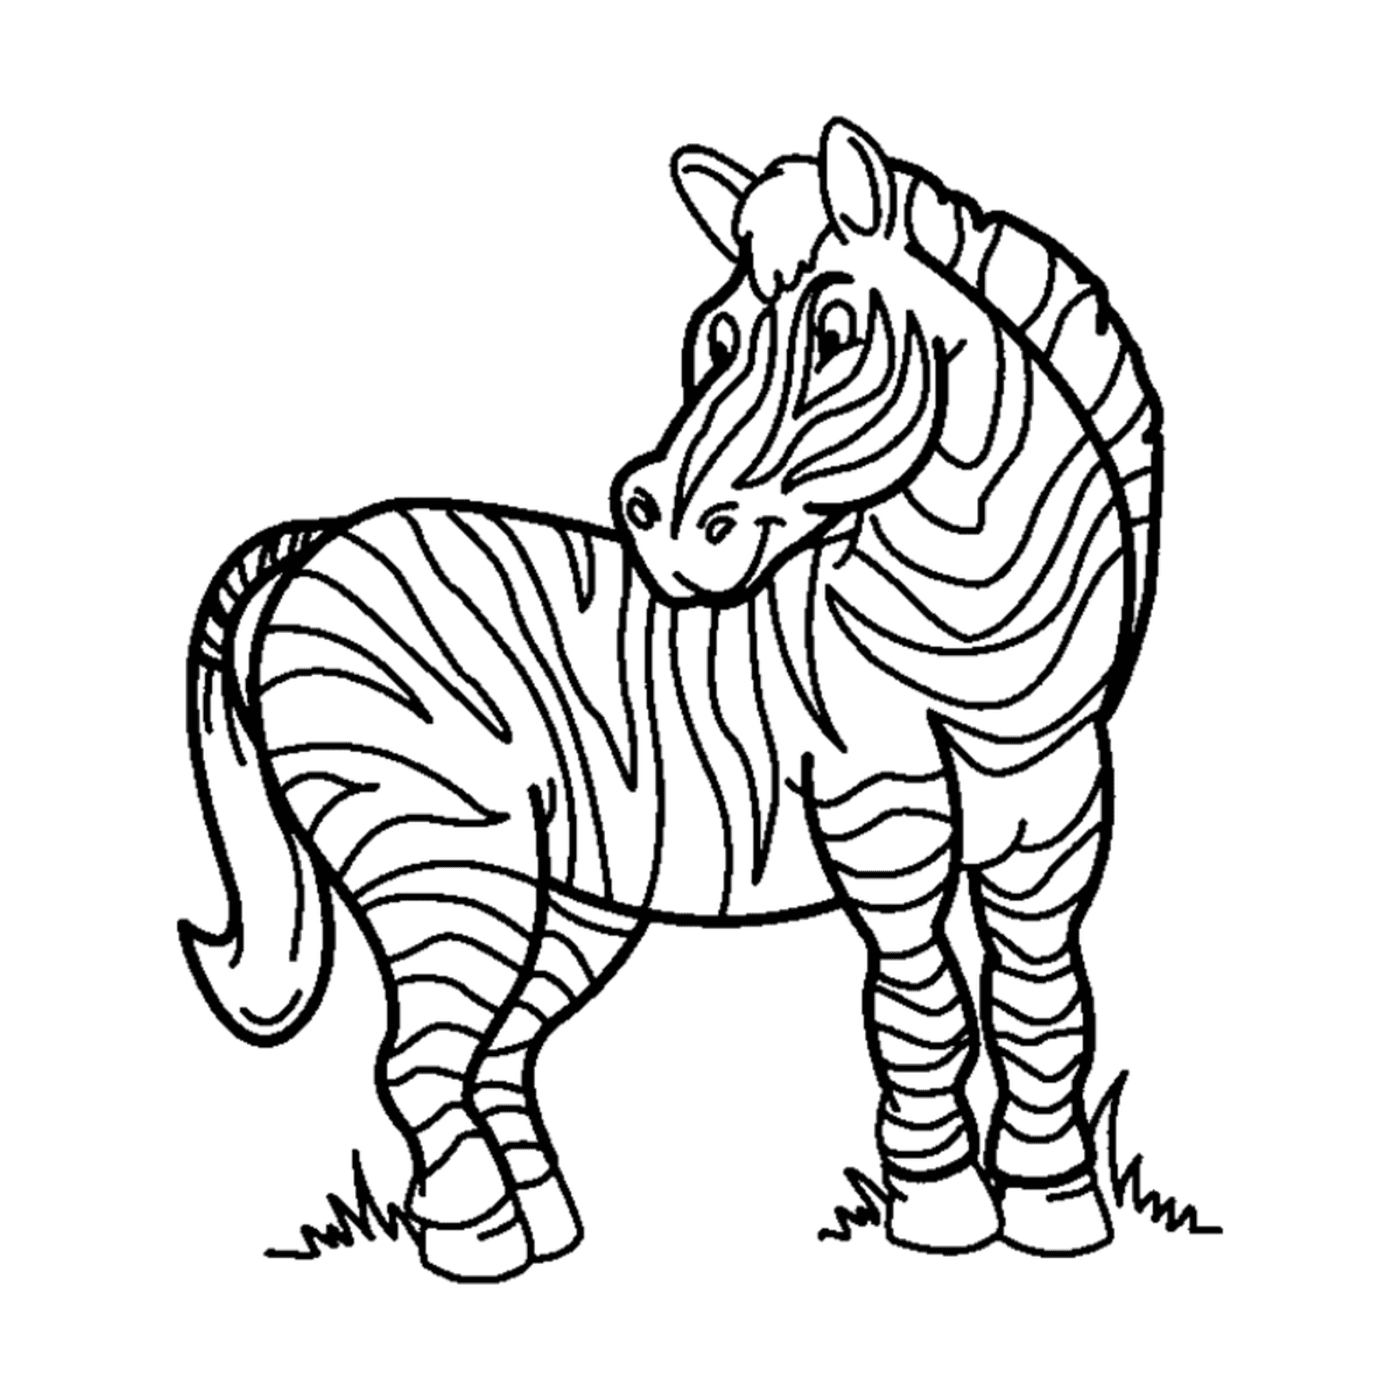  Zebra solitaria e fiera 